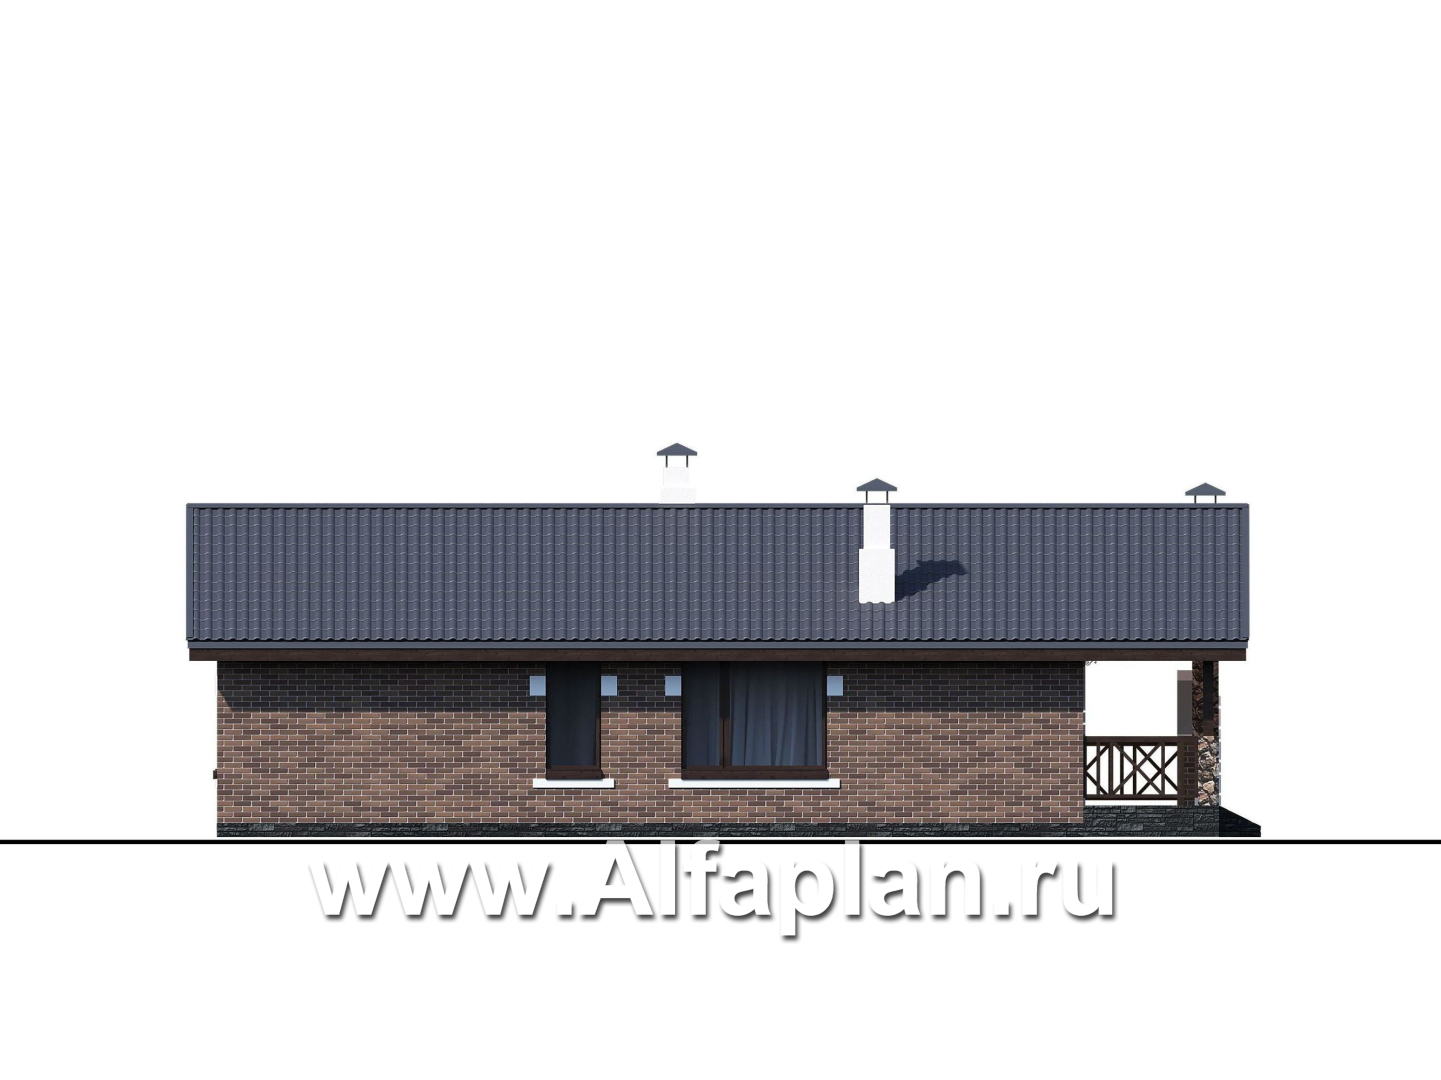 Проекты домов Альфаплан - «Родия» - одноэтажный коттедж с двускатной кровлей - изображение фасада №4